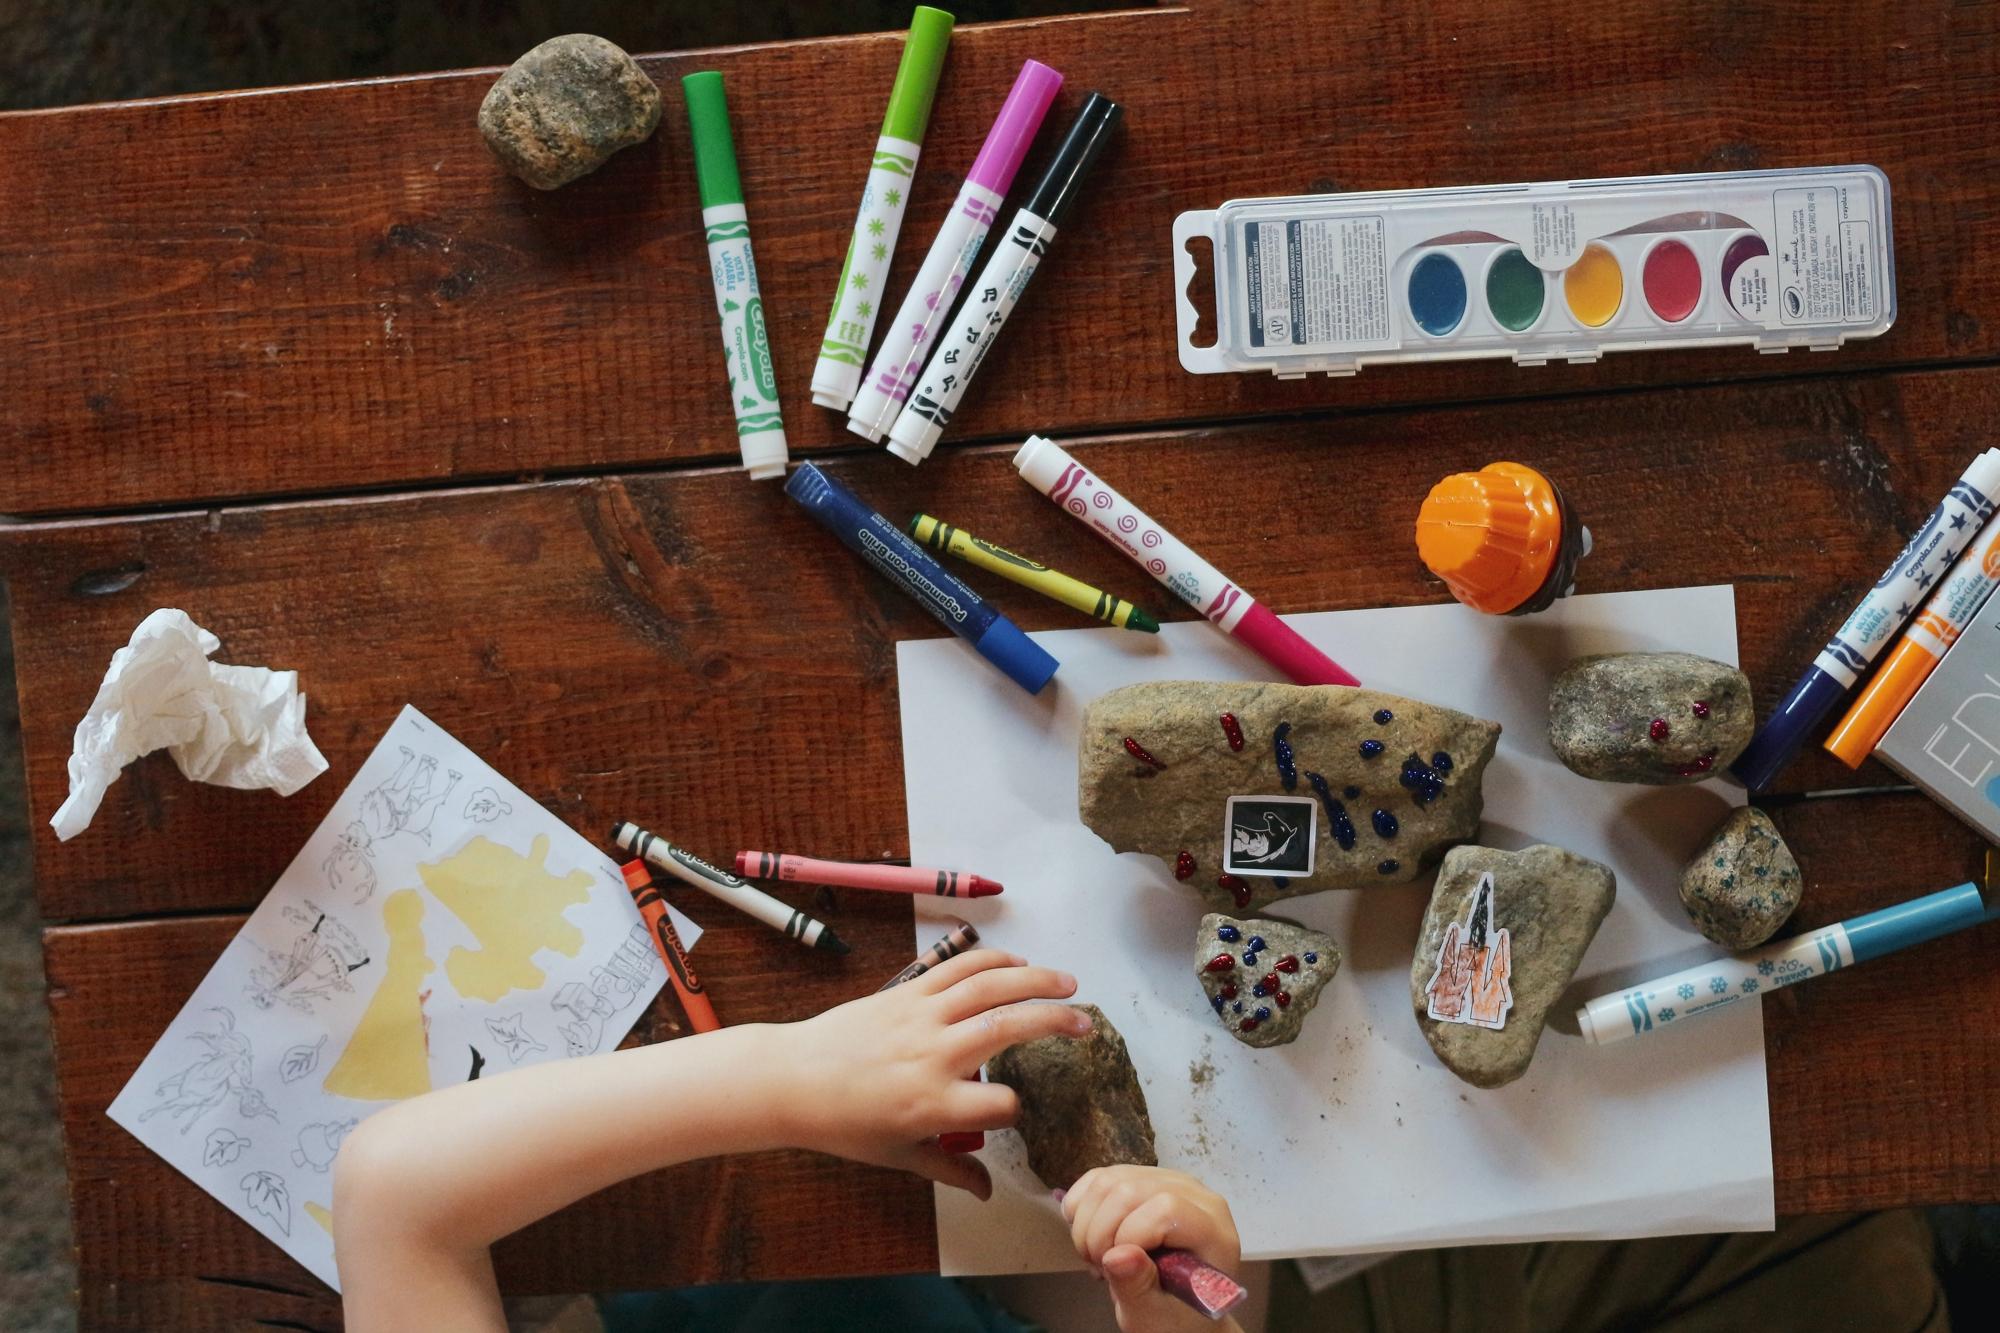 Ett barn som sitter vid ett bord och pysslar. På bordet ligger det kritor, tuschpennor, målarfärg och glitter.